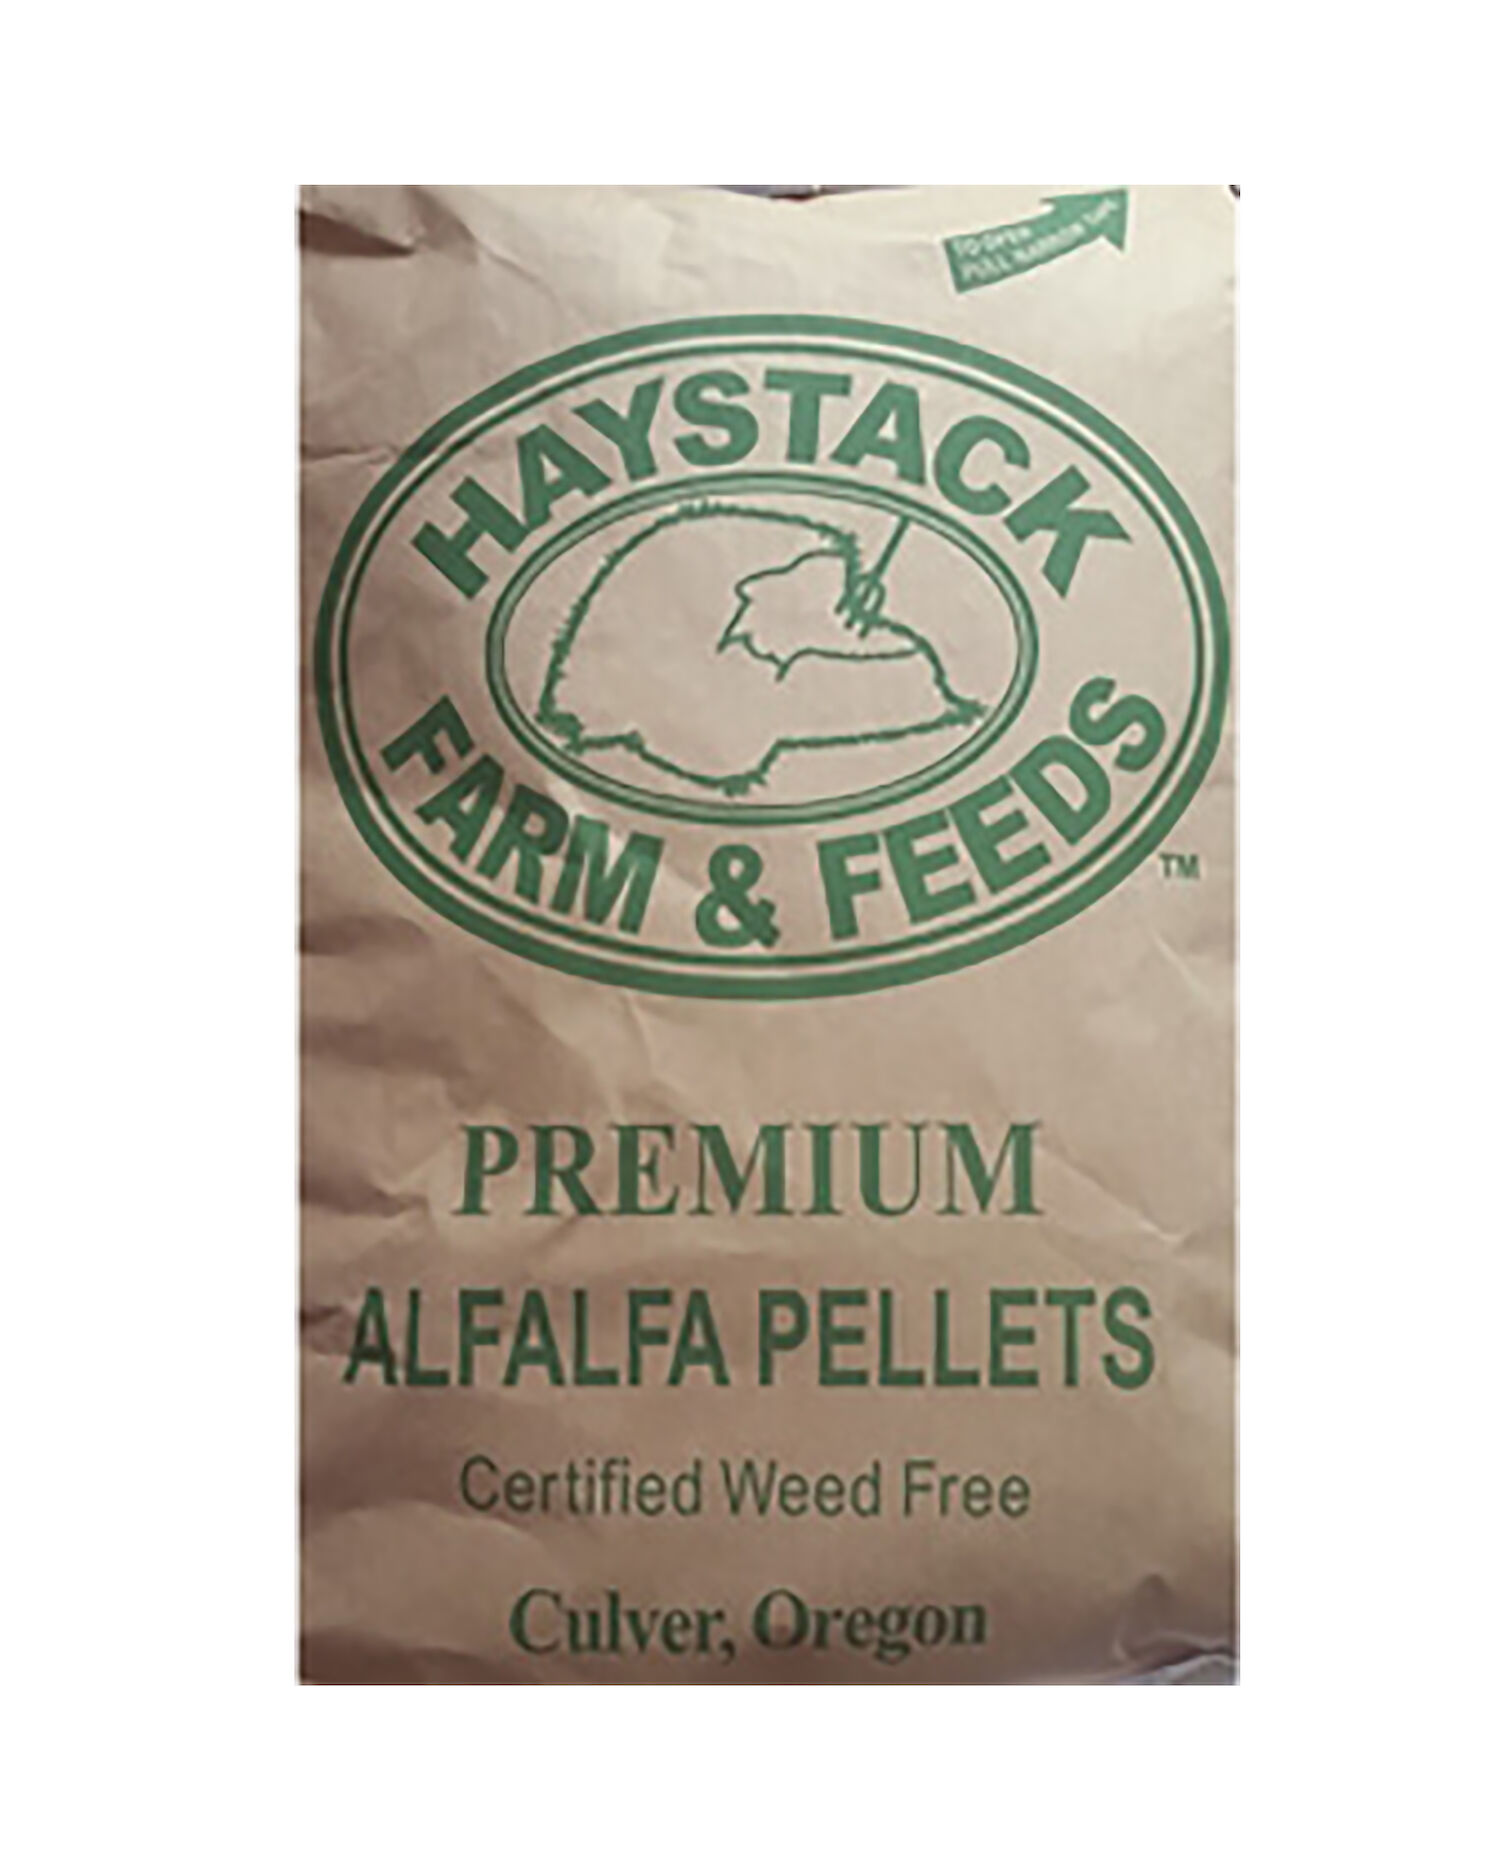 haystack-alf-pellets.jpg